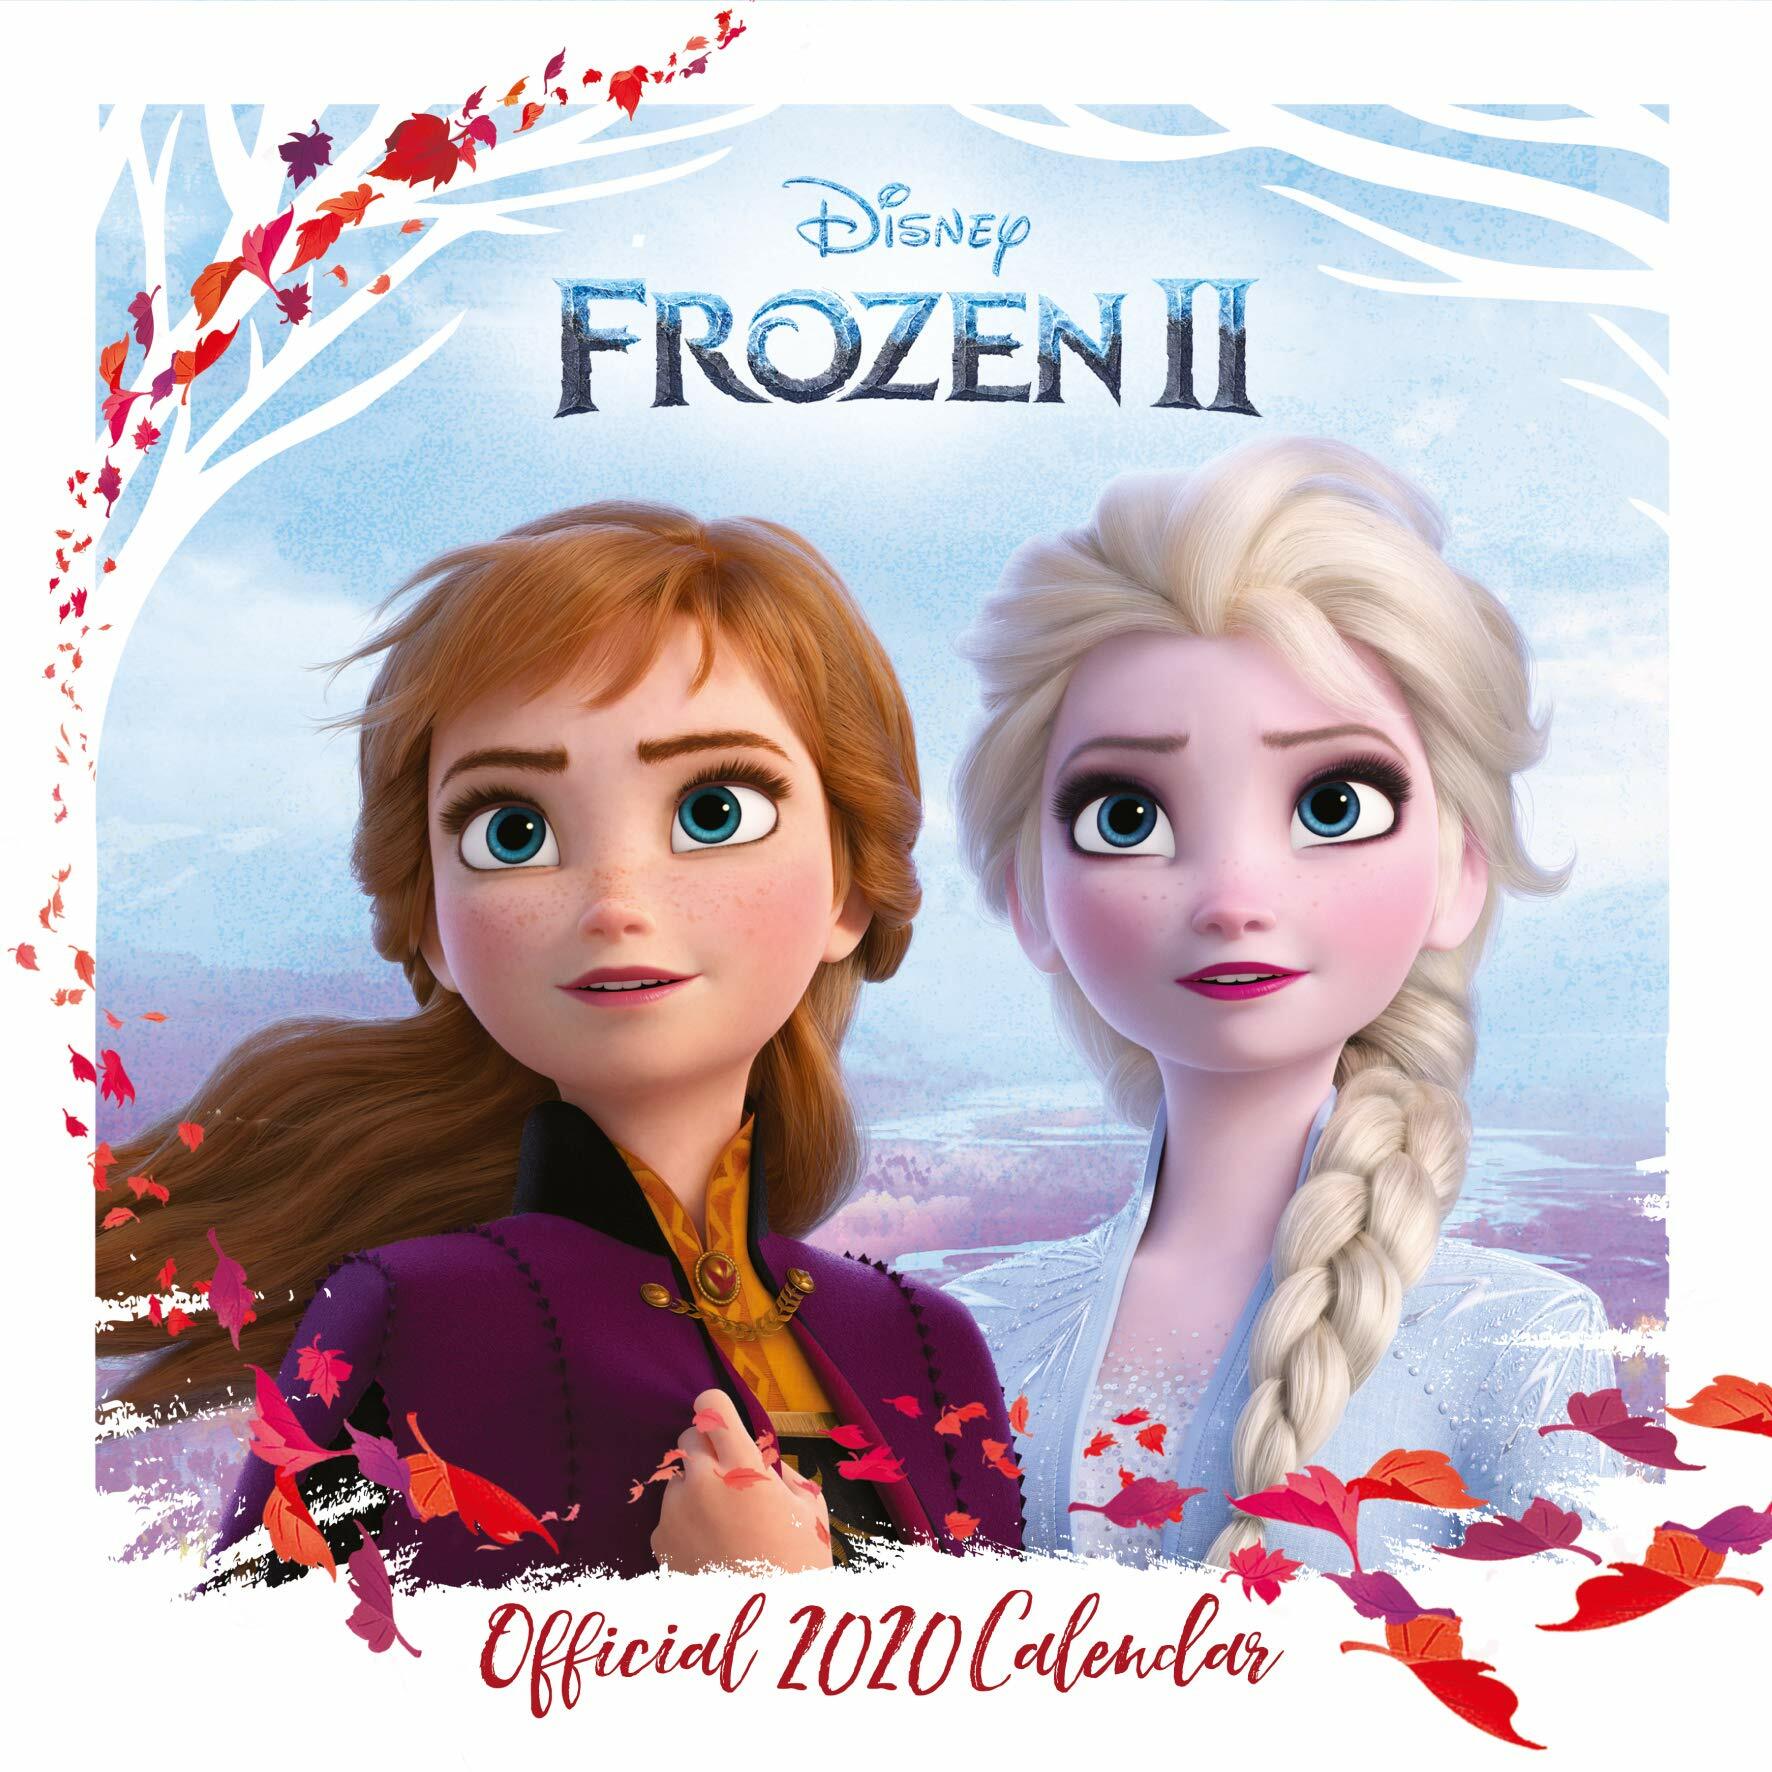 Disney Frozen 2 2020 Calendar - Official Square Wall Format Calendar (Calendar)